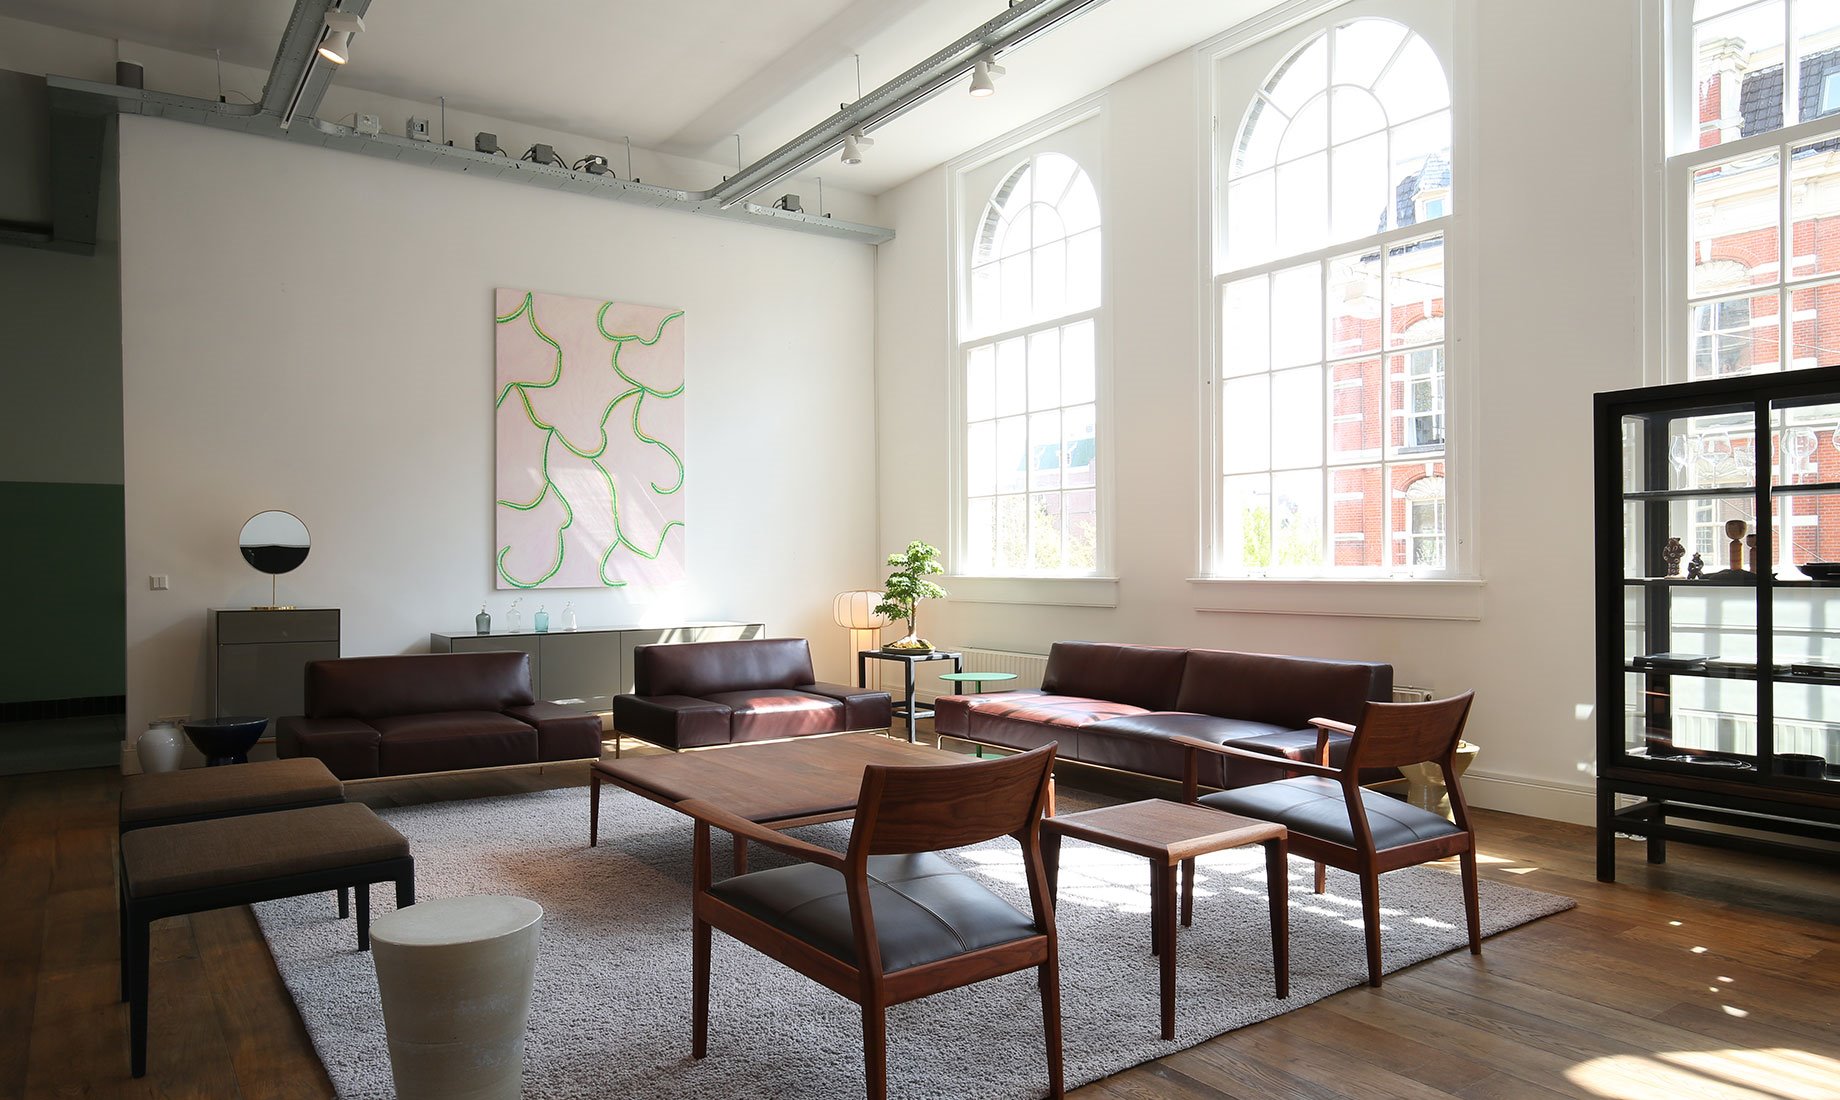 Tienda en Amsterdam de mobiliario moderno Time & Style creada por Kengo Kuma sillas de madera y sofas de cuero